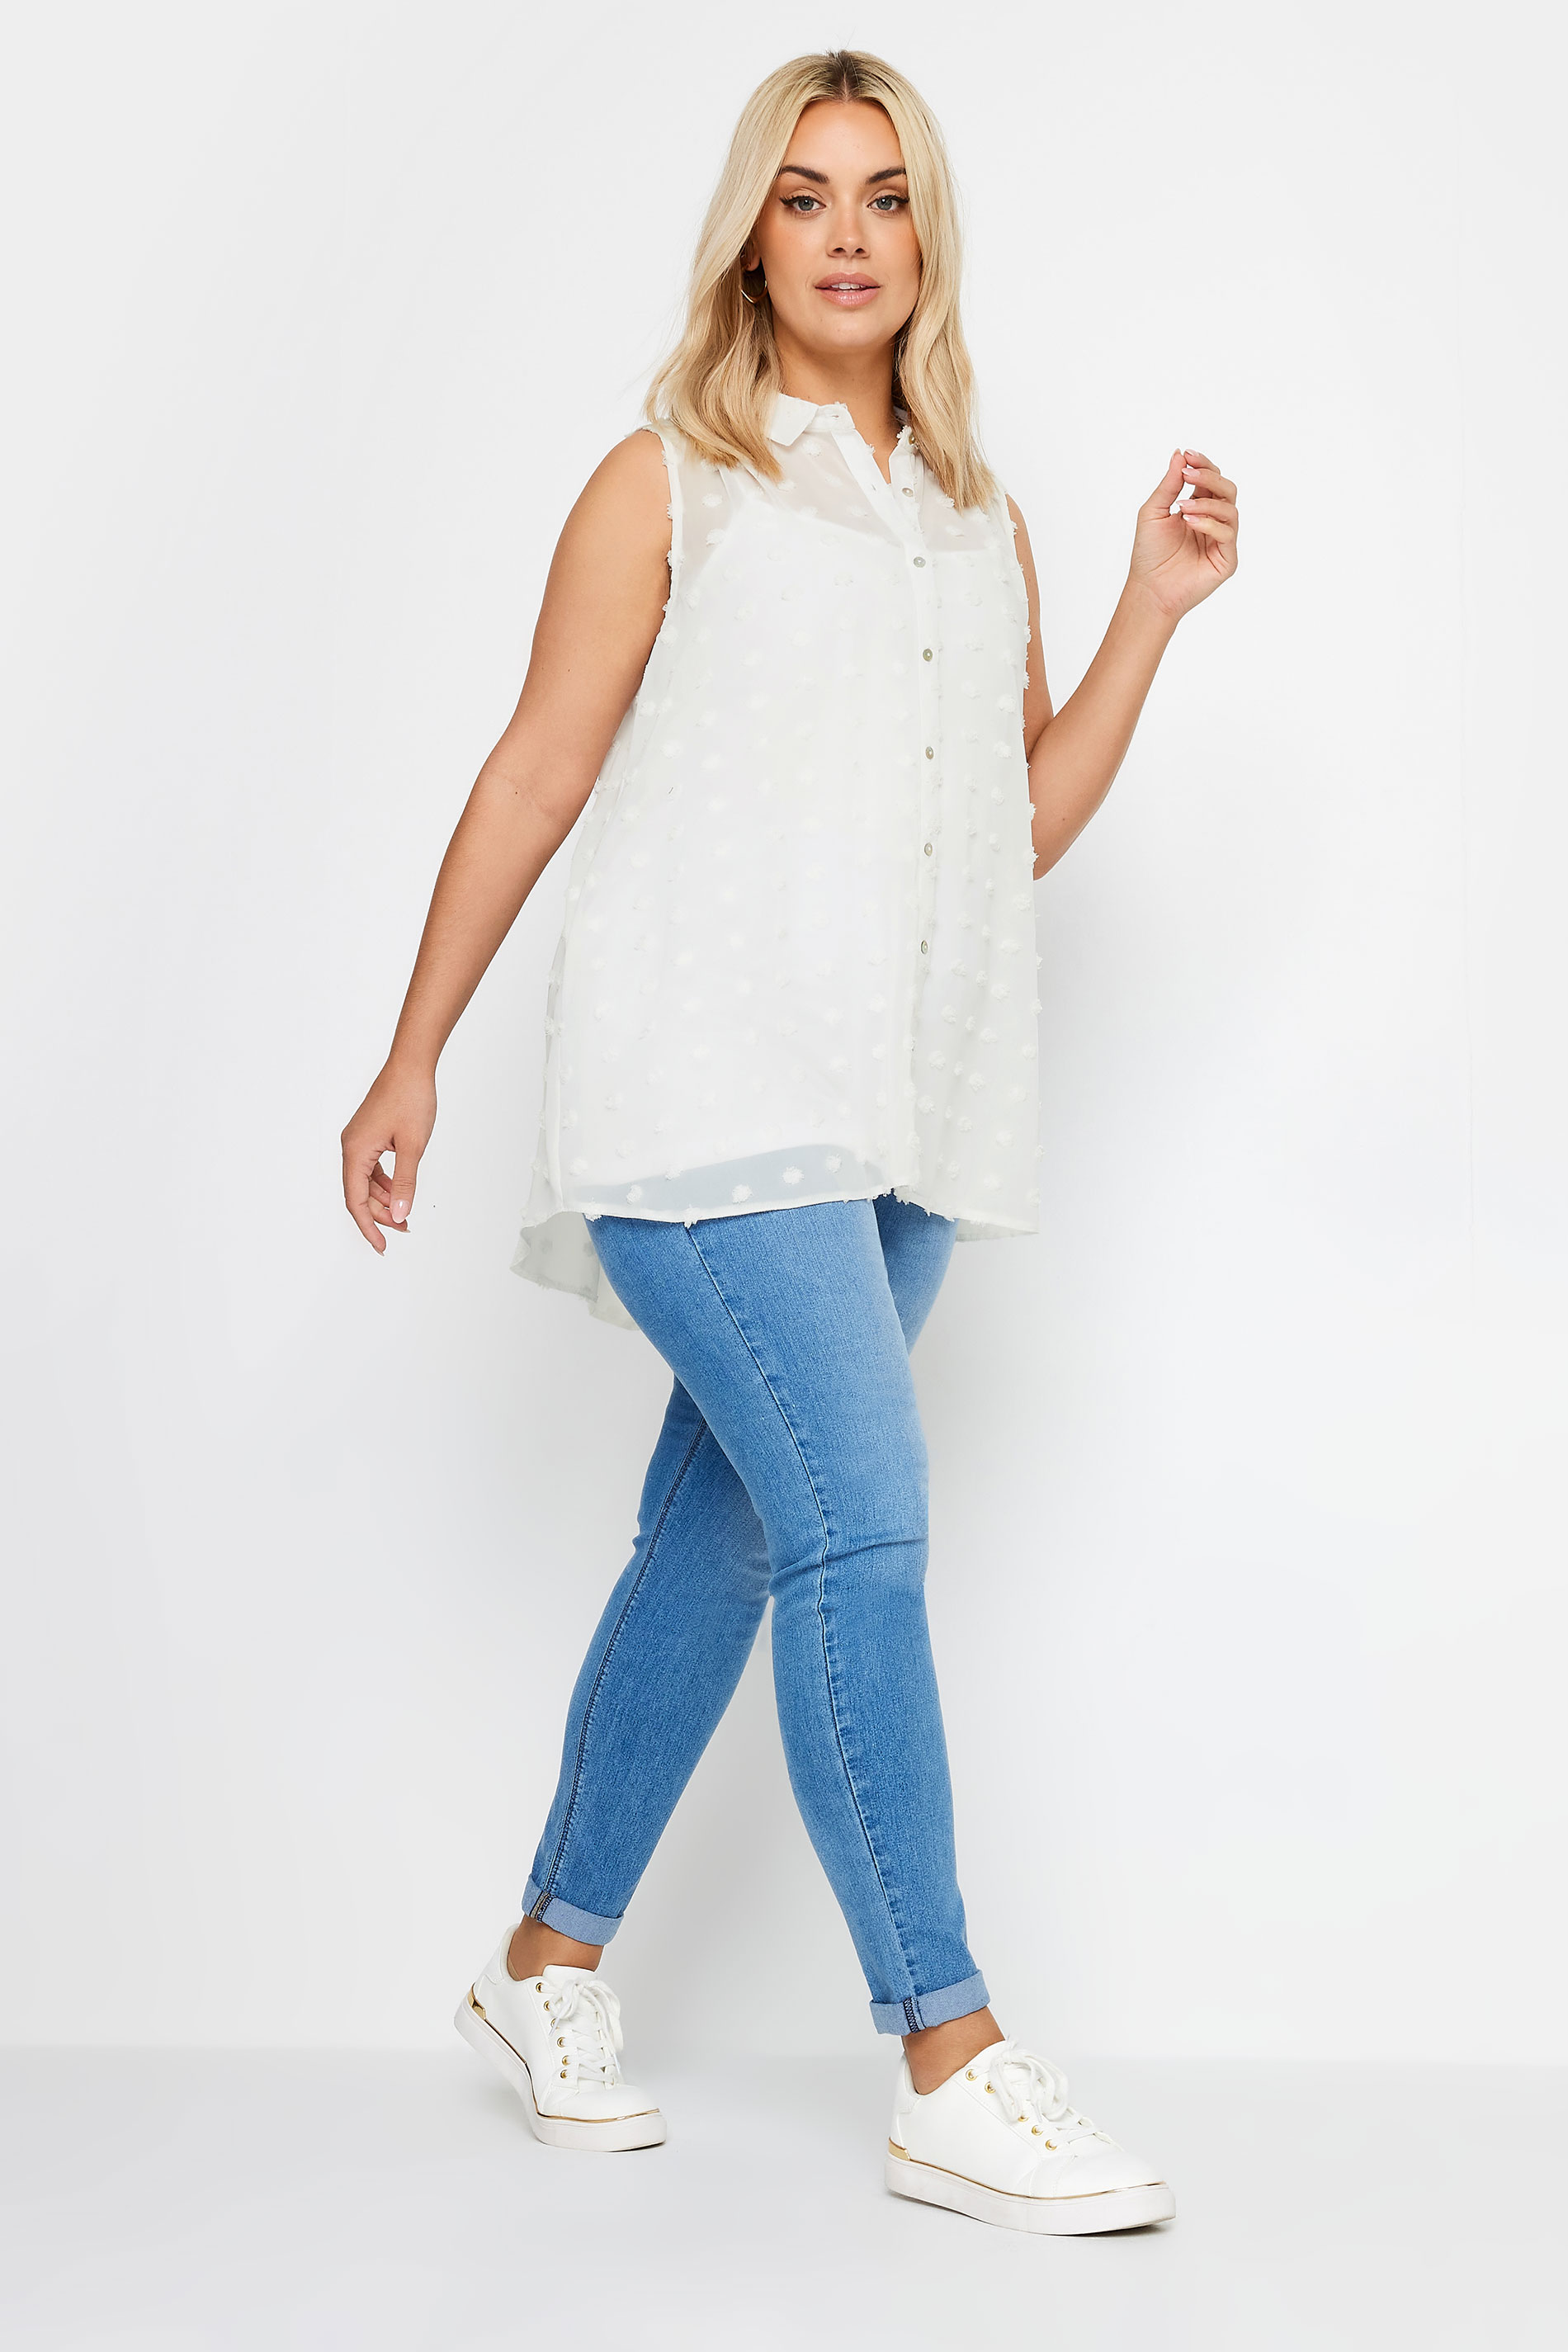 YOURS Plus Size White Sleeveless Shirt | Yours Clothing 2